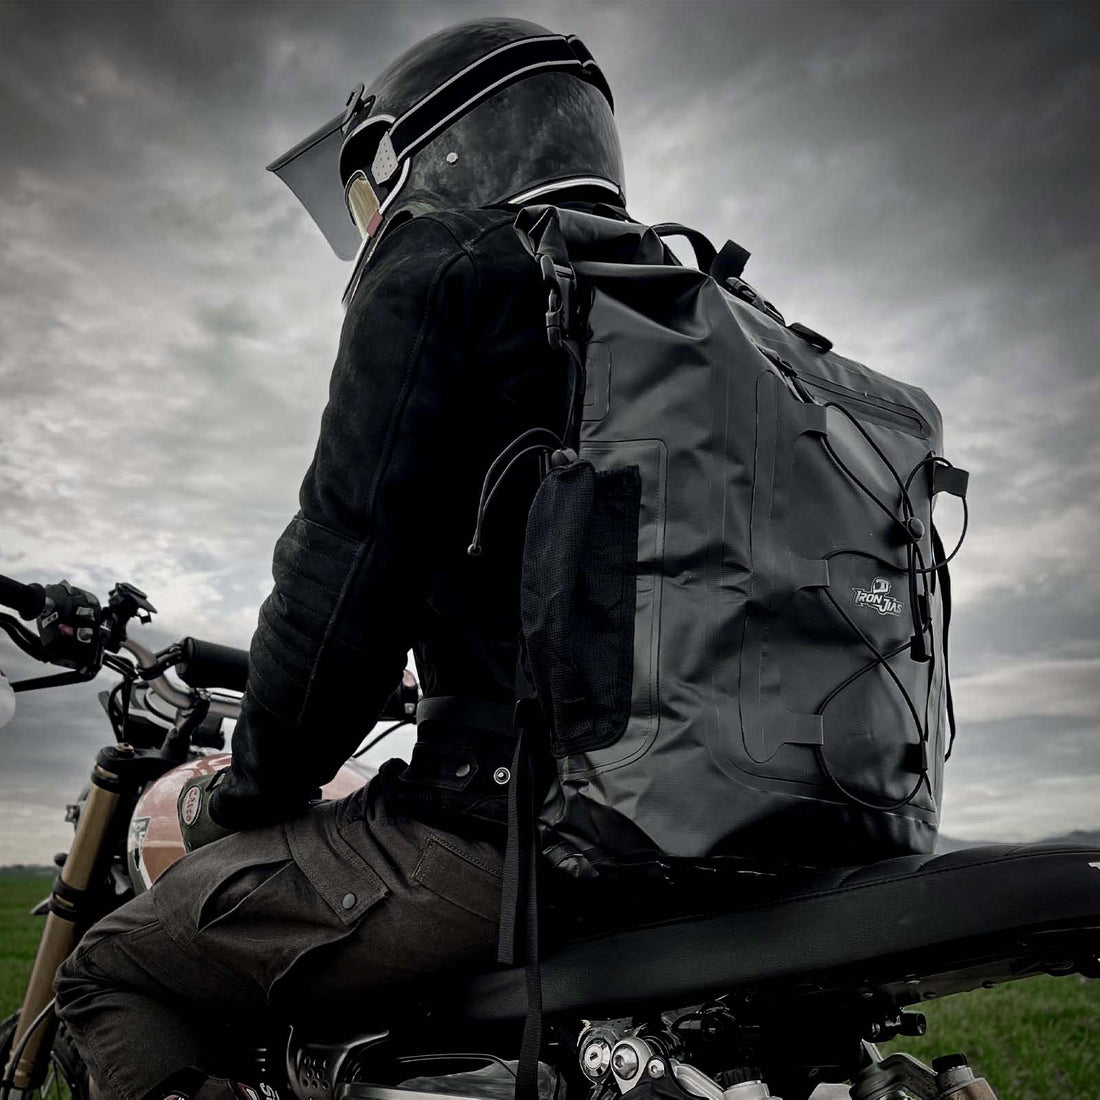 Waterproof High Capacity Motorcycle Backpack | BAG001